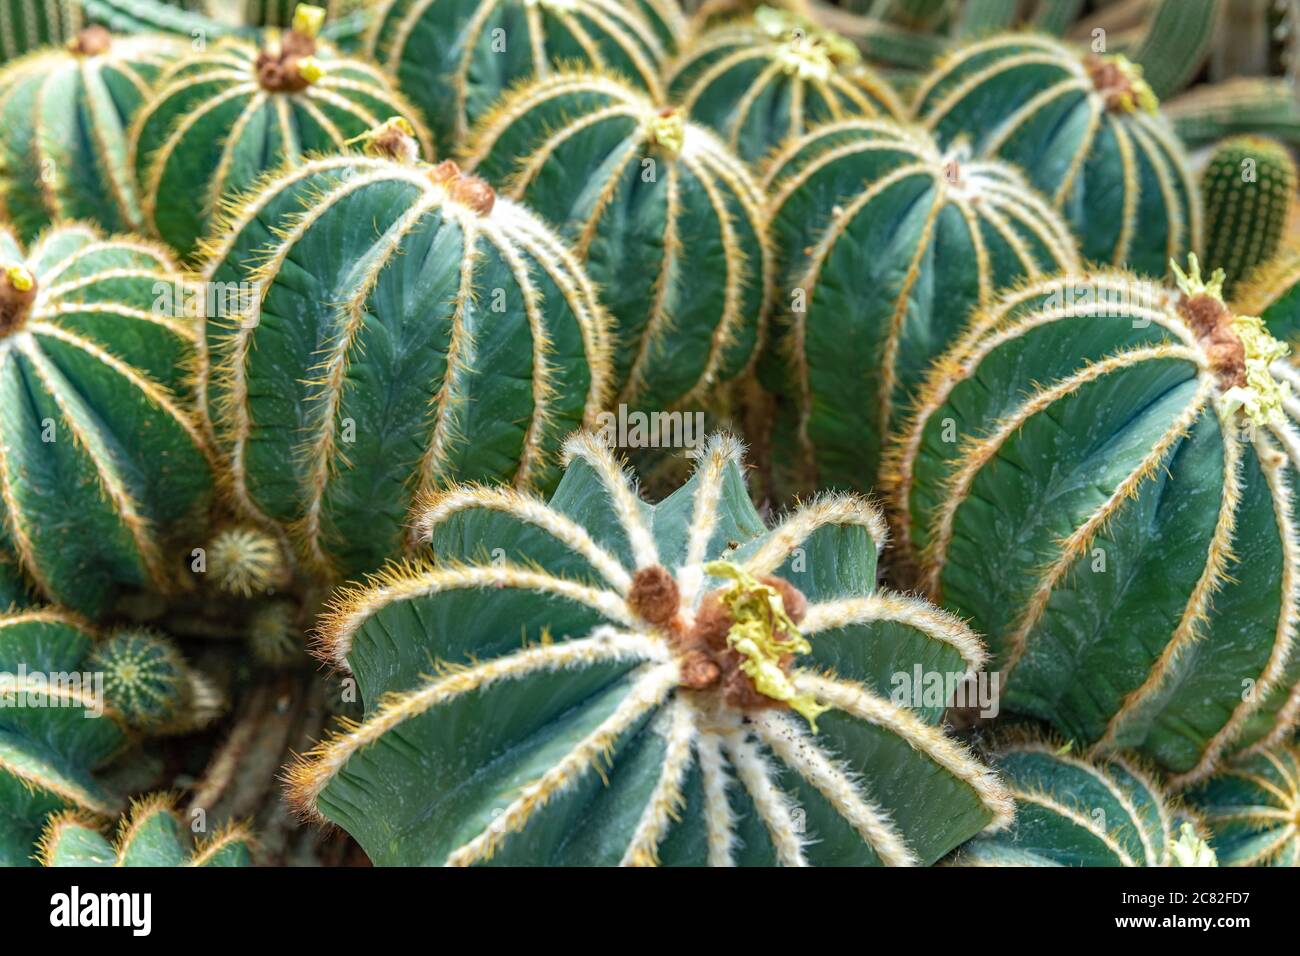 Parodia magnifica, Eriocactus magnificus cactus in a botanical garden Stock Photo